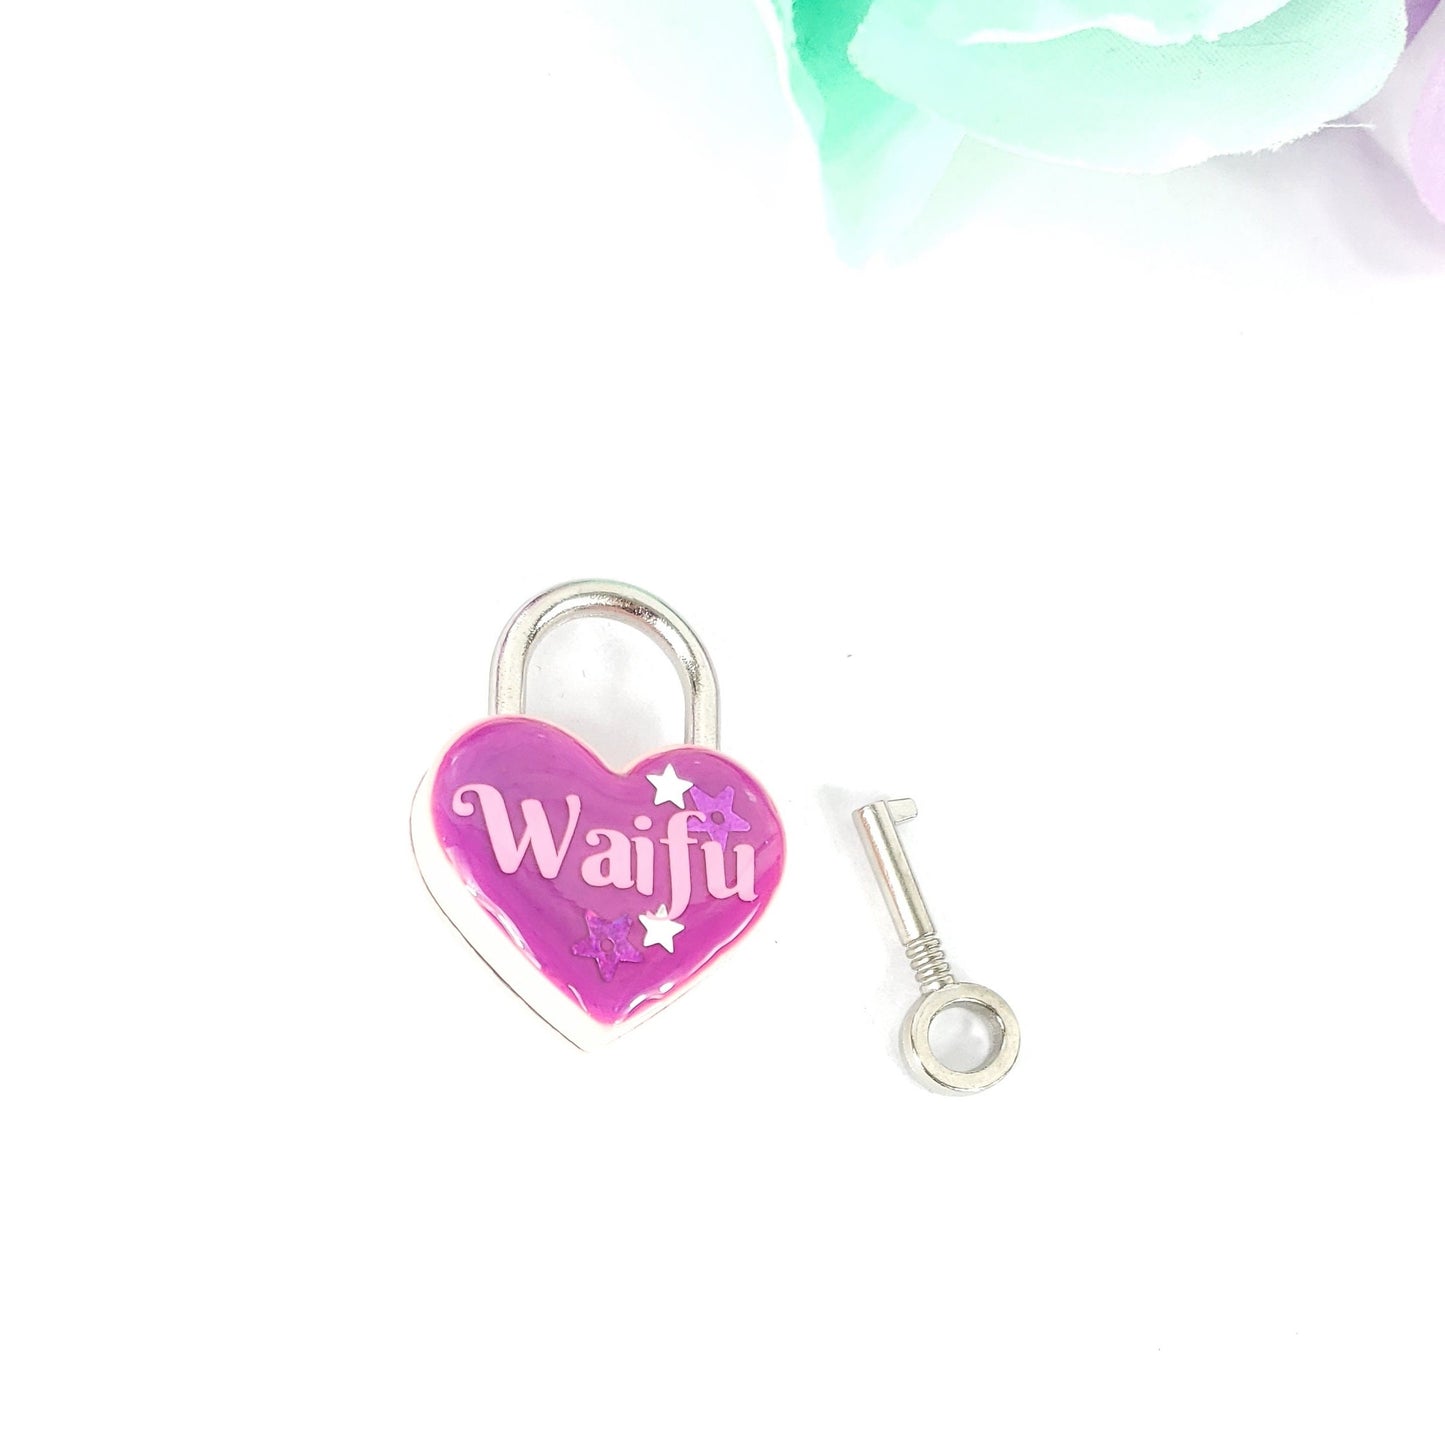 Waifu Heart Pad Lock